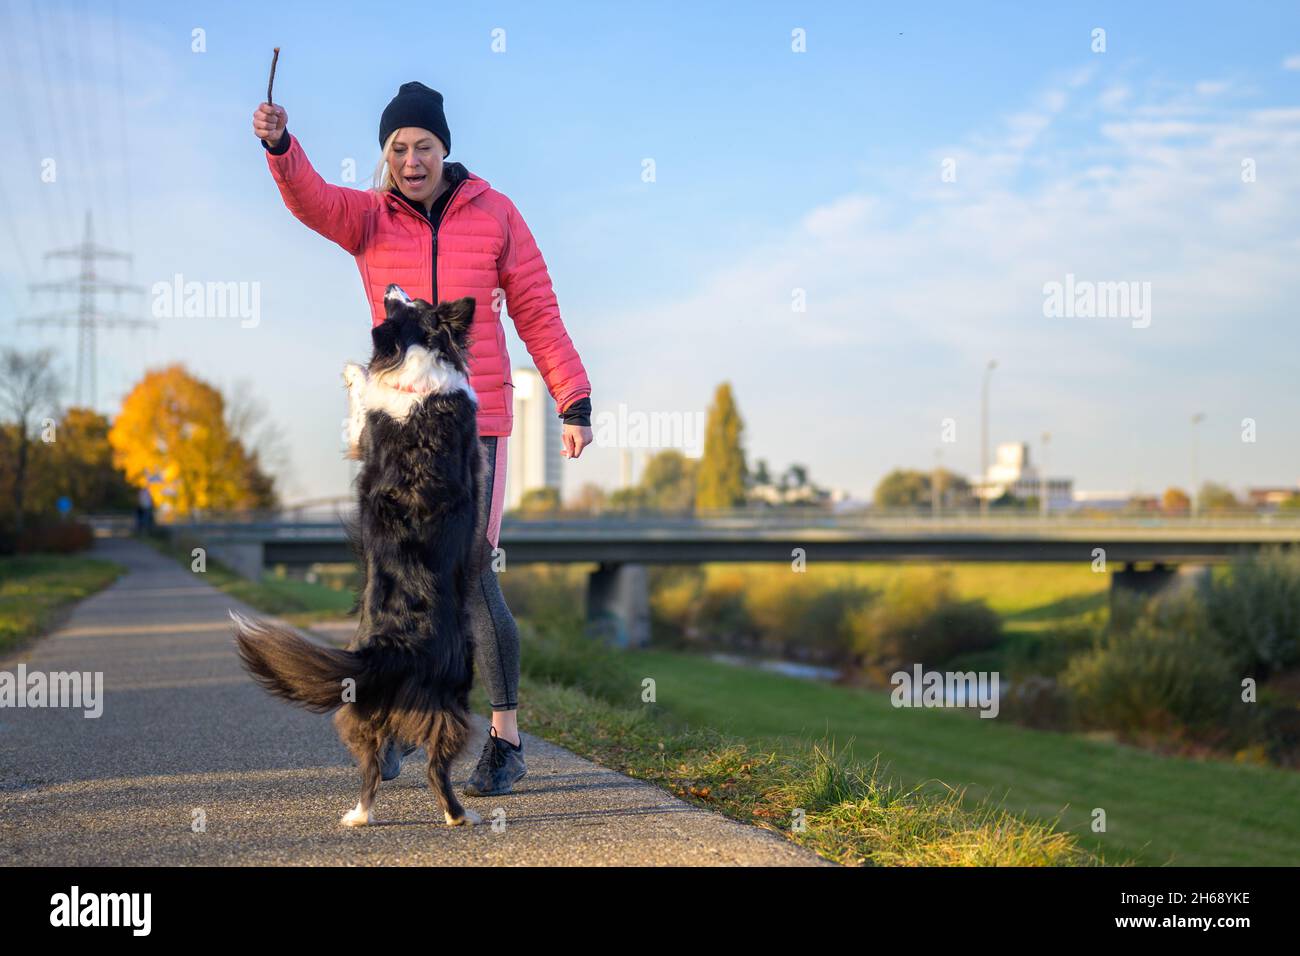 Frau neckt einen Border Collie mit einem erhobenen Stock in einem Spiel von fetch im Abendlicht auf einem ländlichen Fußweg, während der Hund in der Luft springt Stockfoto